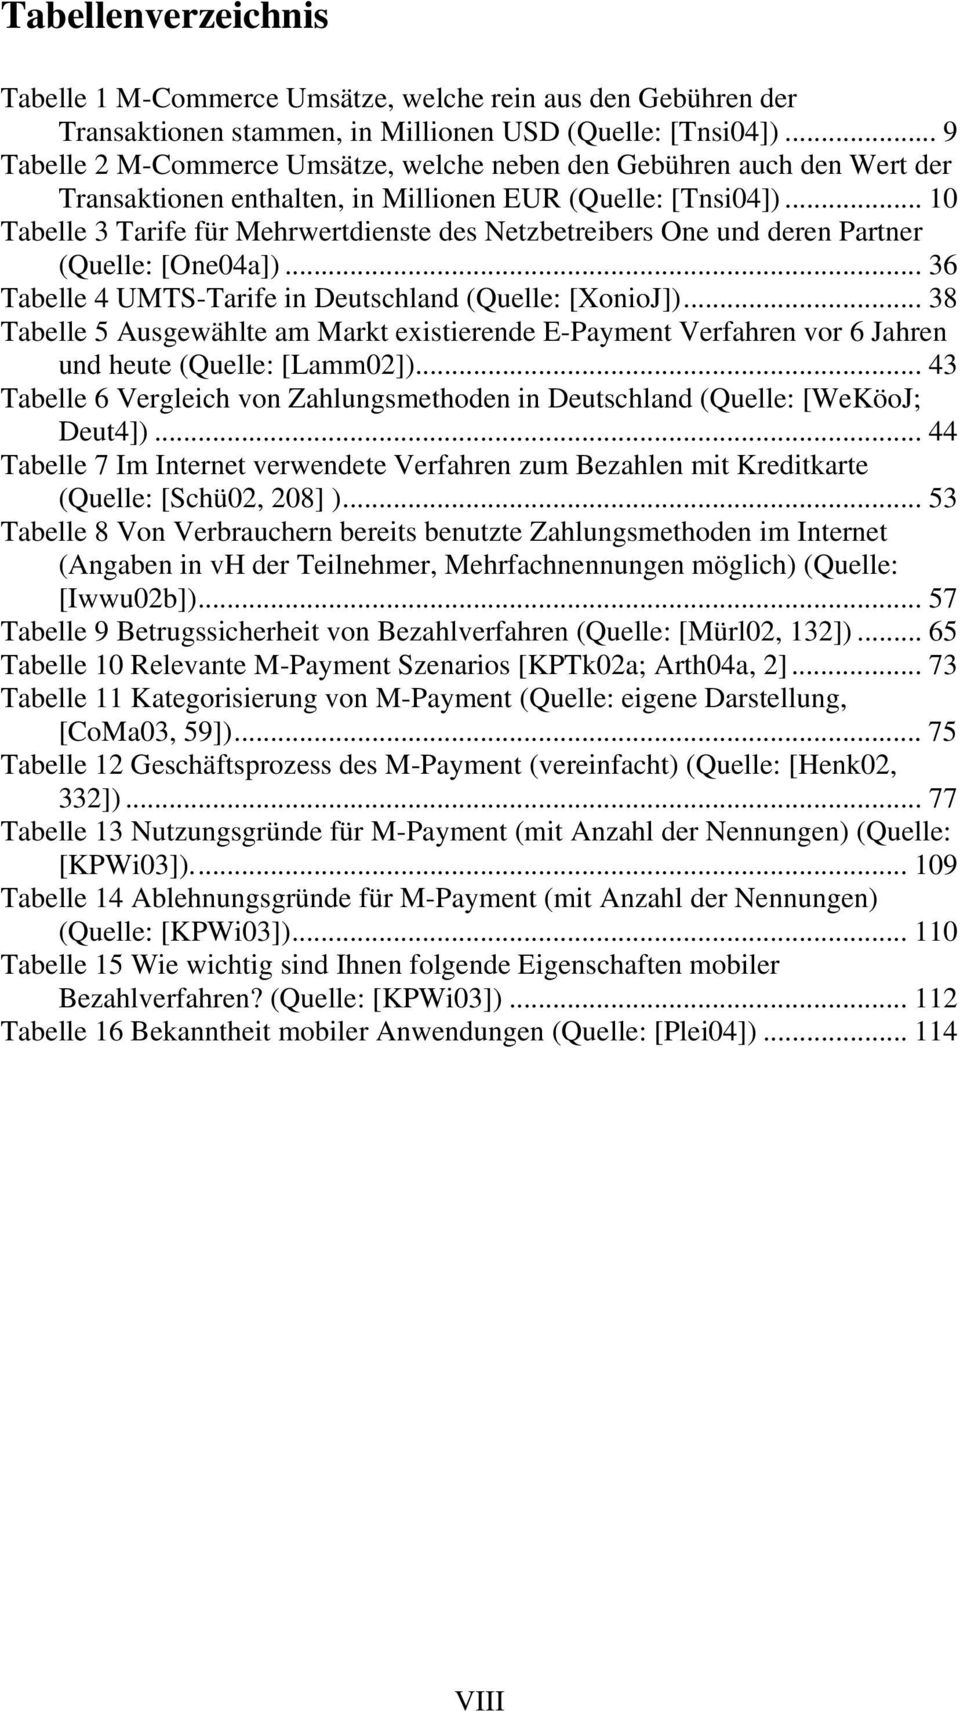 .. 10 Tabelle 3 Tarife für Mehrwertdienste des Netzbetreibers One und deren Partner (Quelle: [One04a])... 36 Tabelle 4 UMTS-Tarife in Deutschland (Quelle: [XonioJ]).